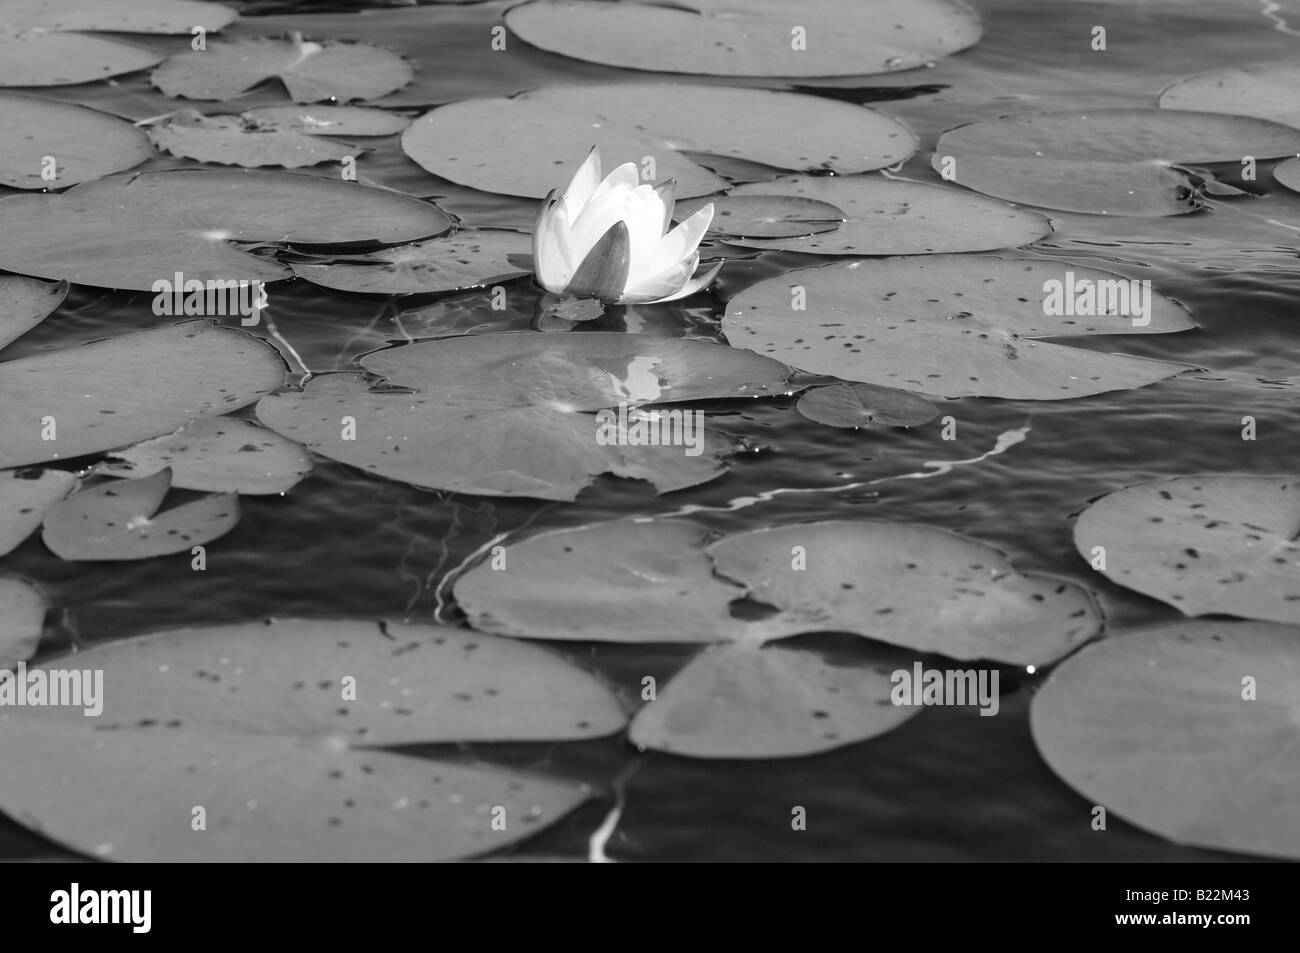 Photographie en noir et blanc d'un nénuphar et de nénuphars flottant délicatement sur les eaux calmes d'un petit étang ou lac. Banque D'Images